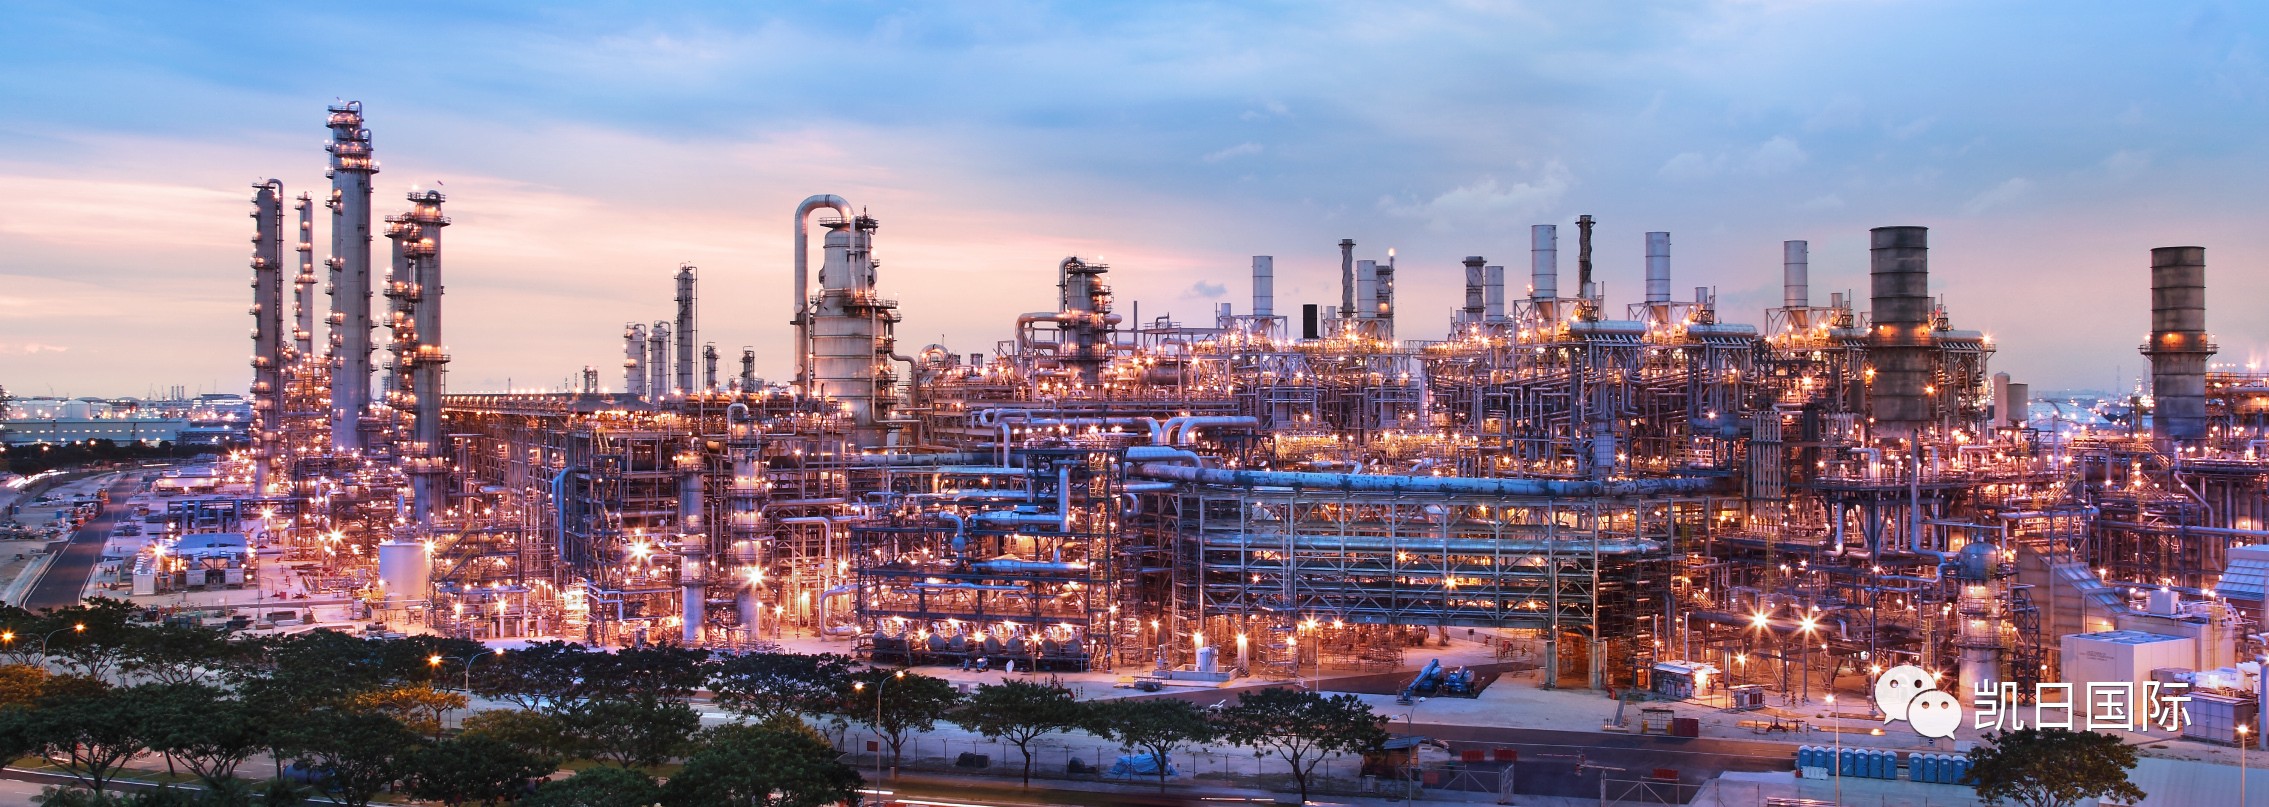 新加坡某著名石油化工公司招聘